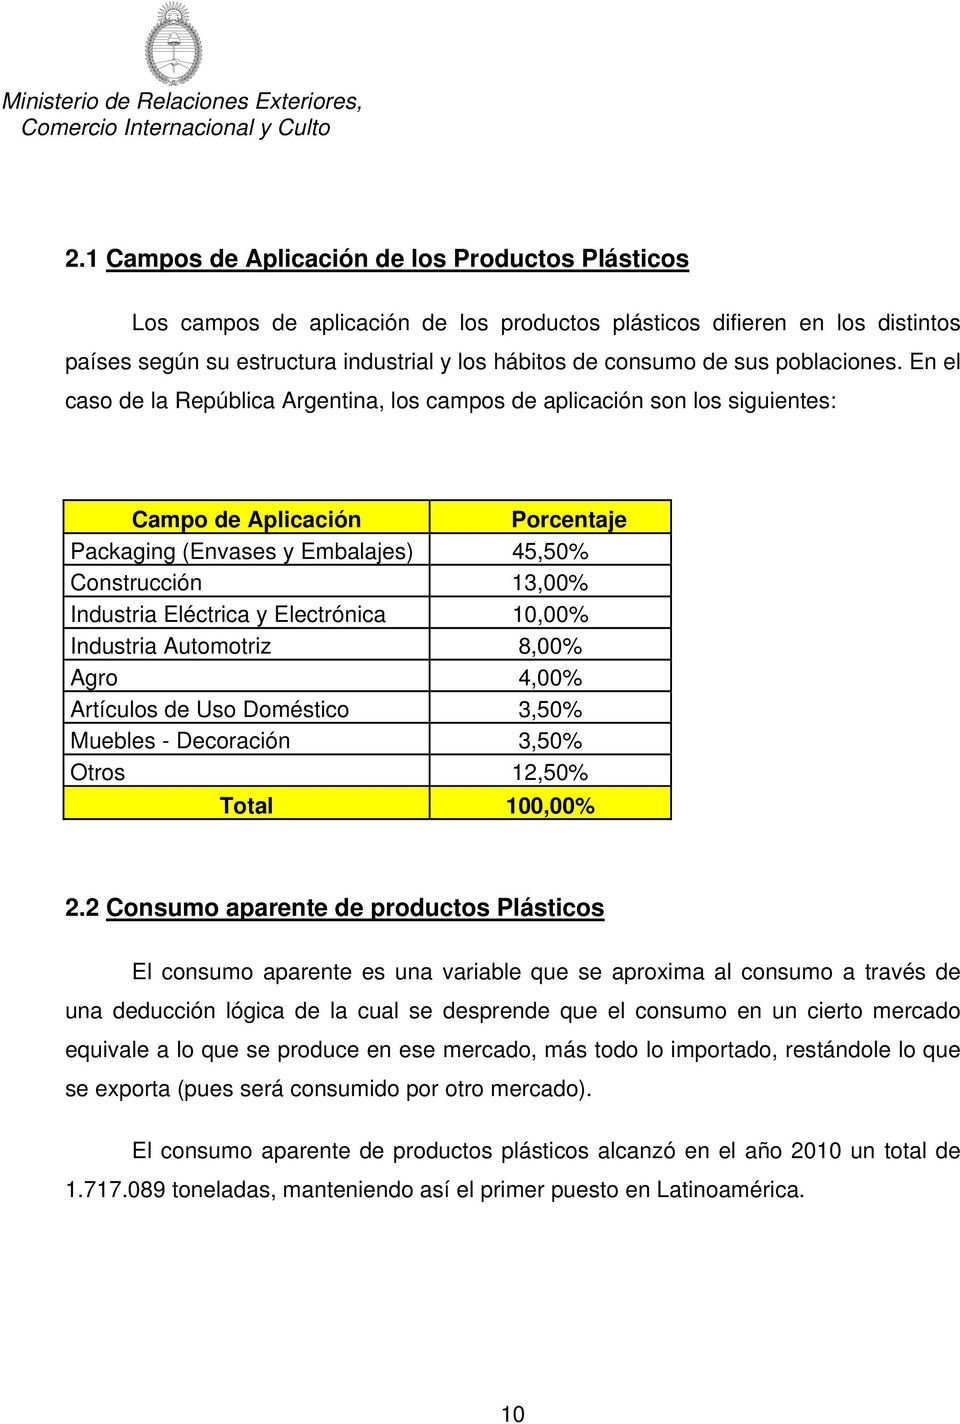 En el caso de la República Argentina, los campos de aplicación son los siguientes: Campo de Aplicación Porcentaje Packaging (Envases y Embalajes) 45,50% Construcción 13,00% Industria Eléctrica y